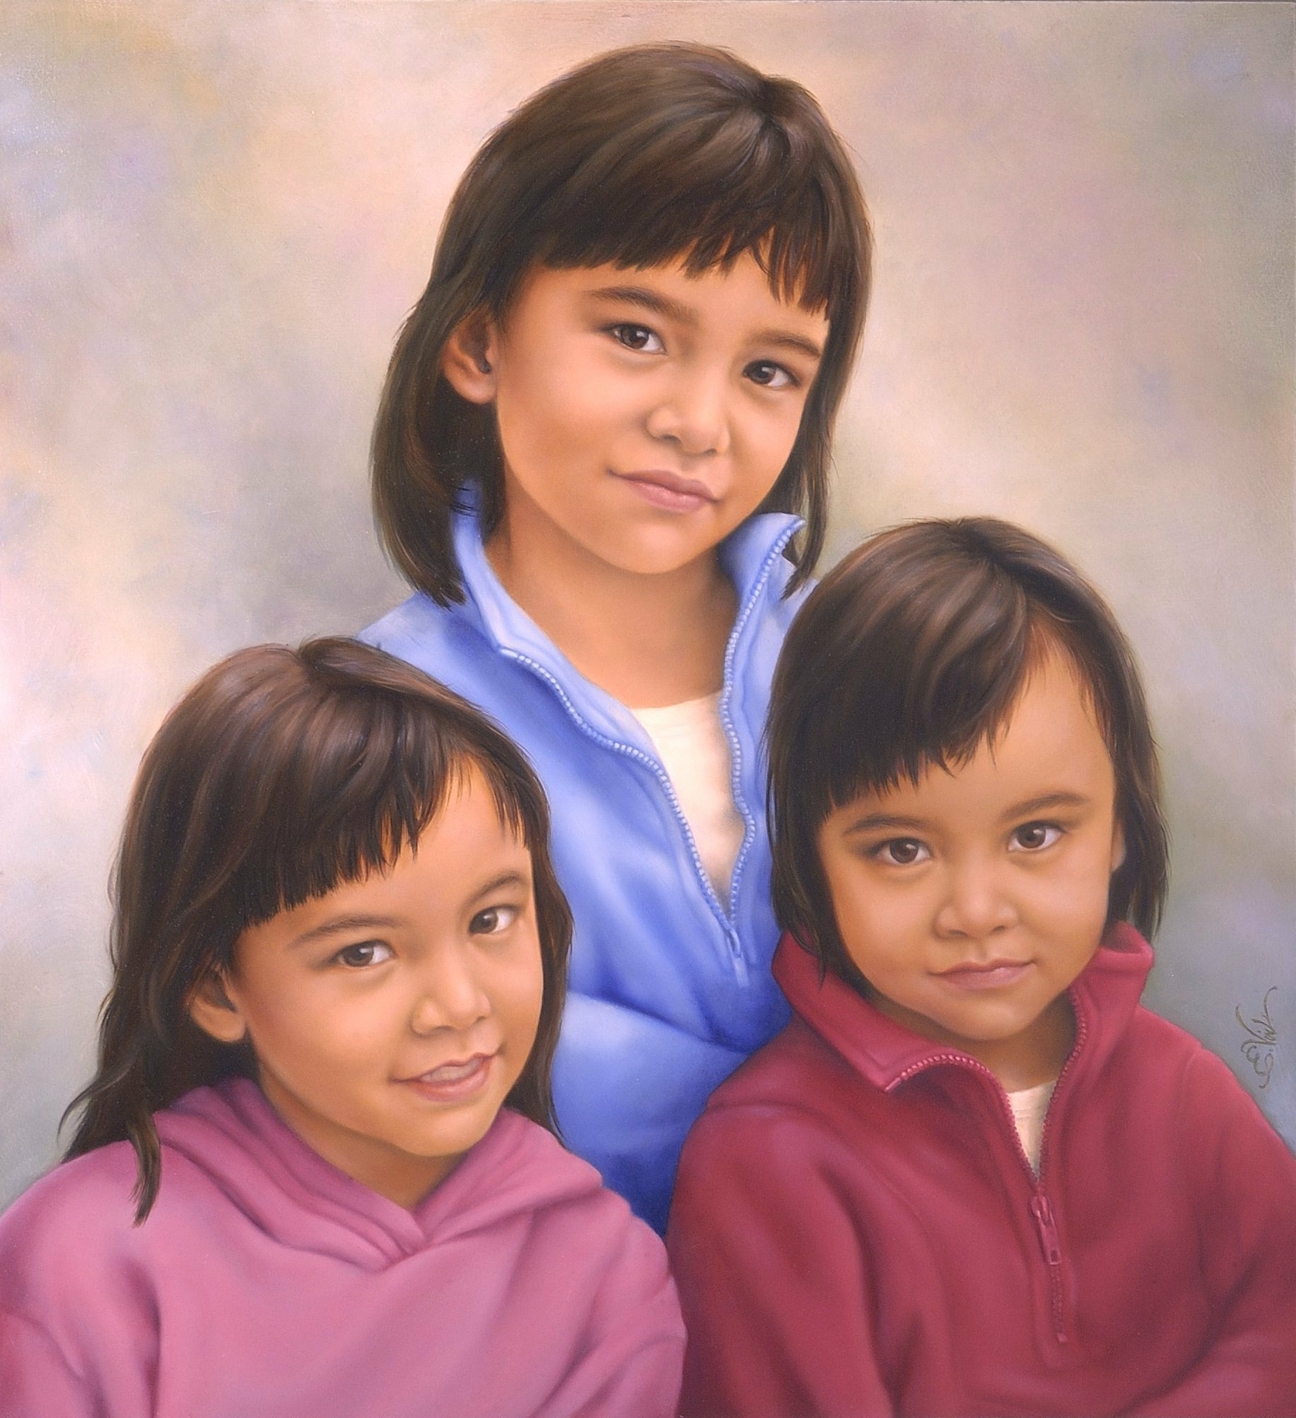 Portret van drie mooie jonge meisjes, zusjes van elkaar. Zij komen uit Jakarta, Indonesië.  Gemaakt door portretschilder Els Vink.